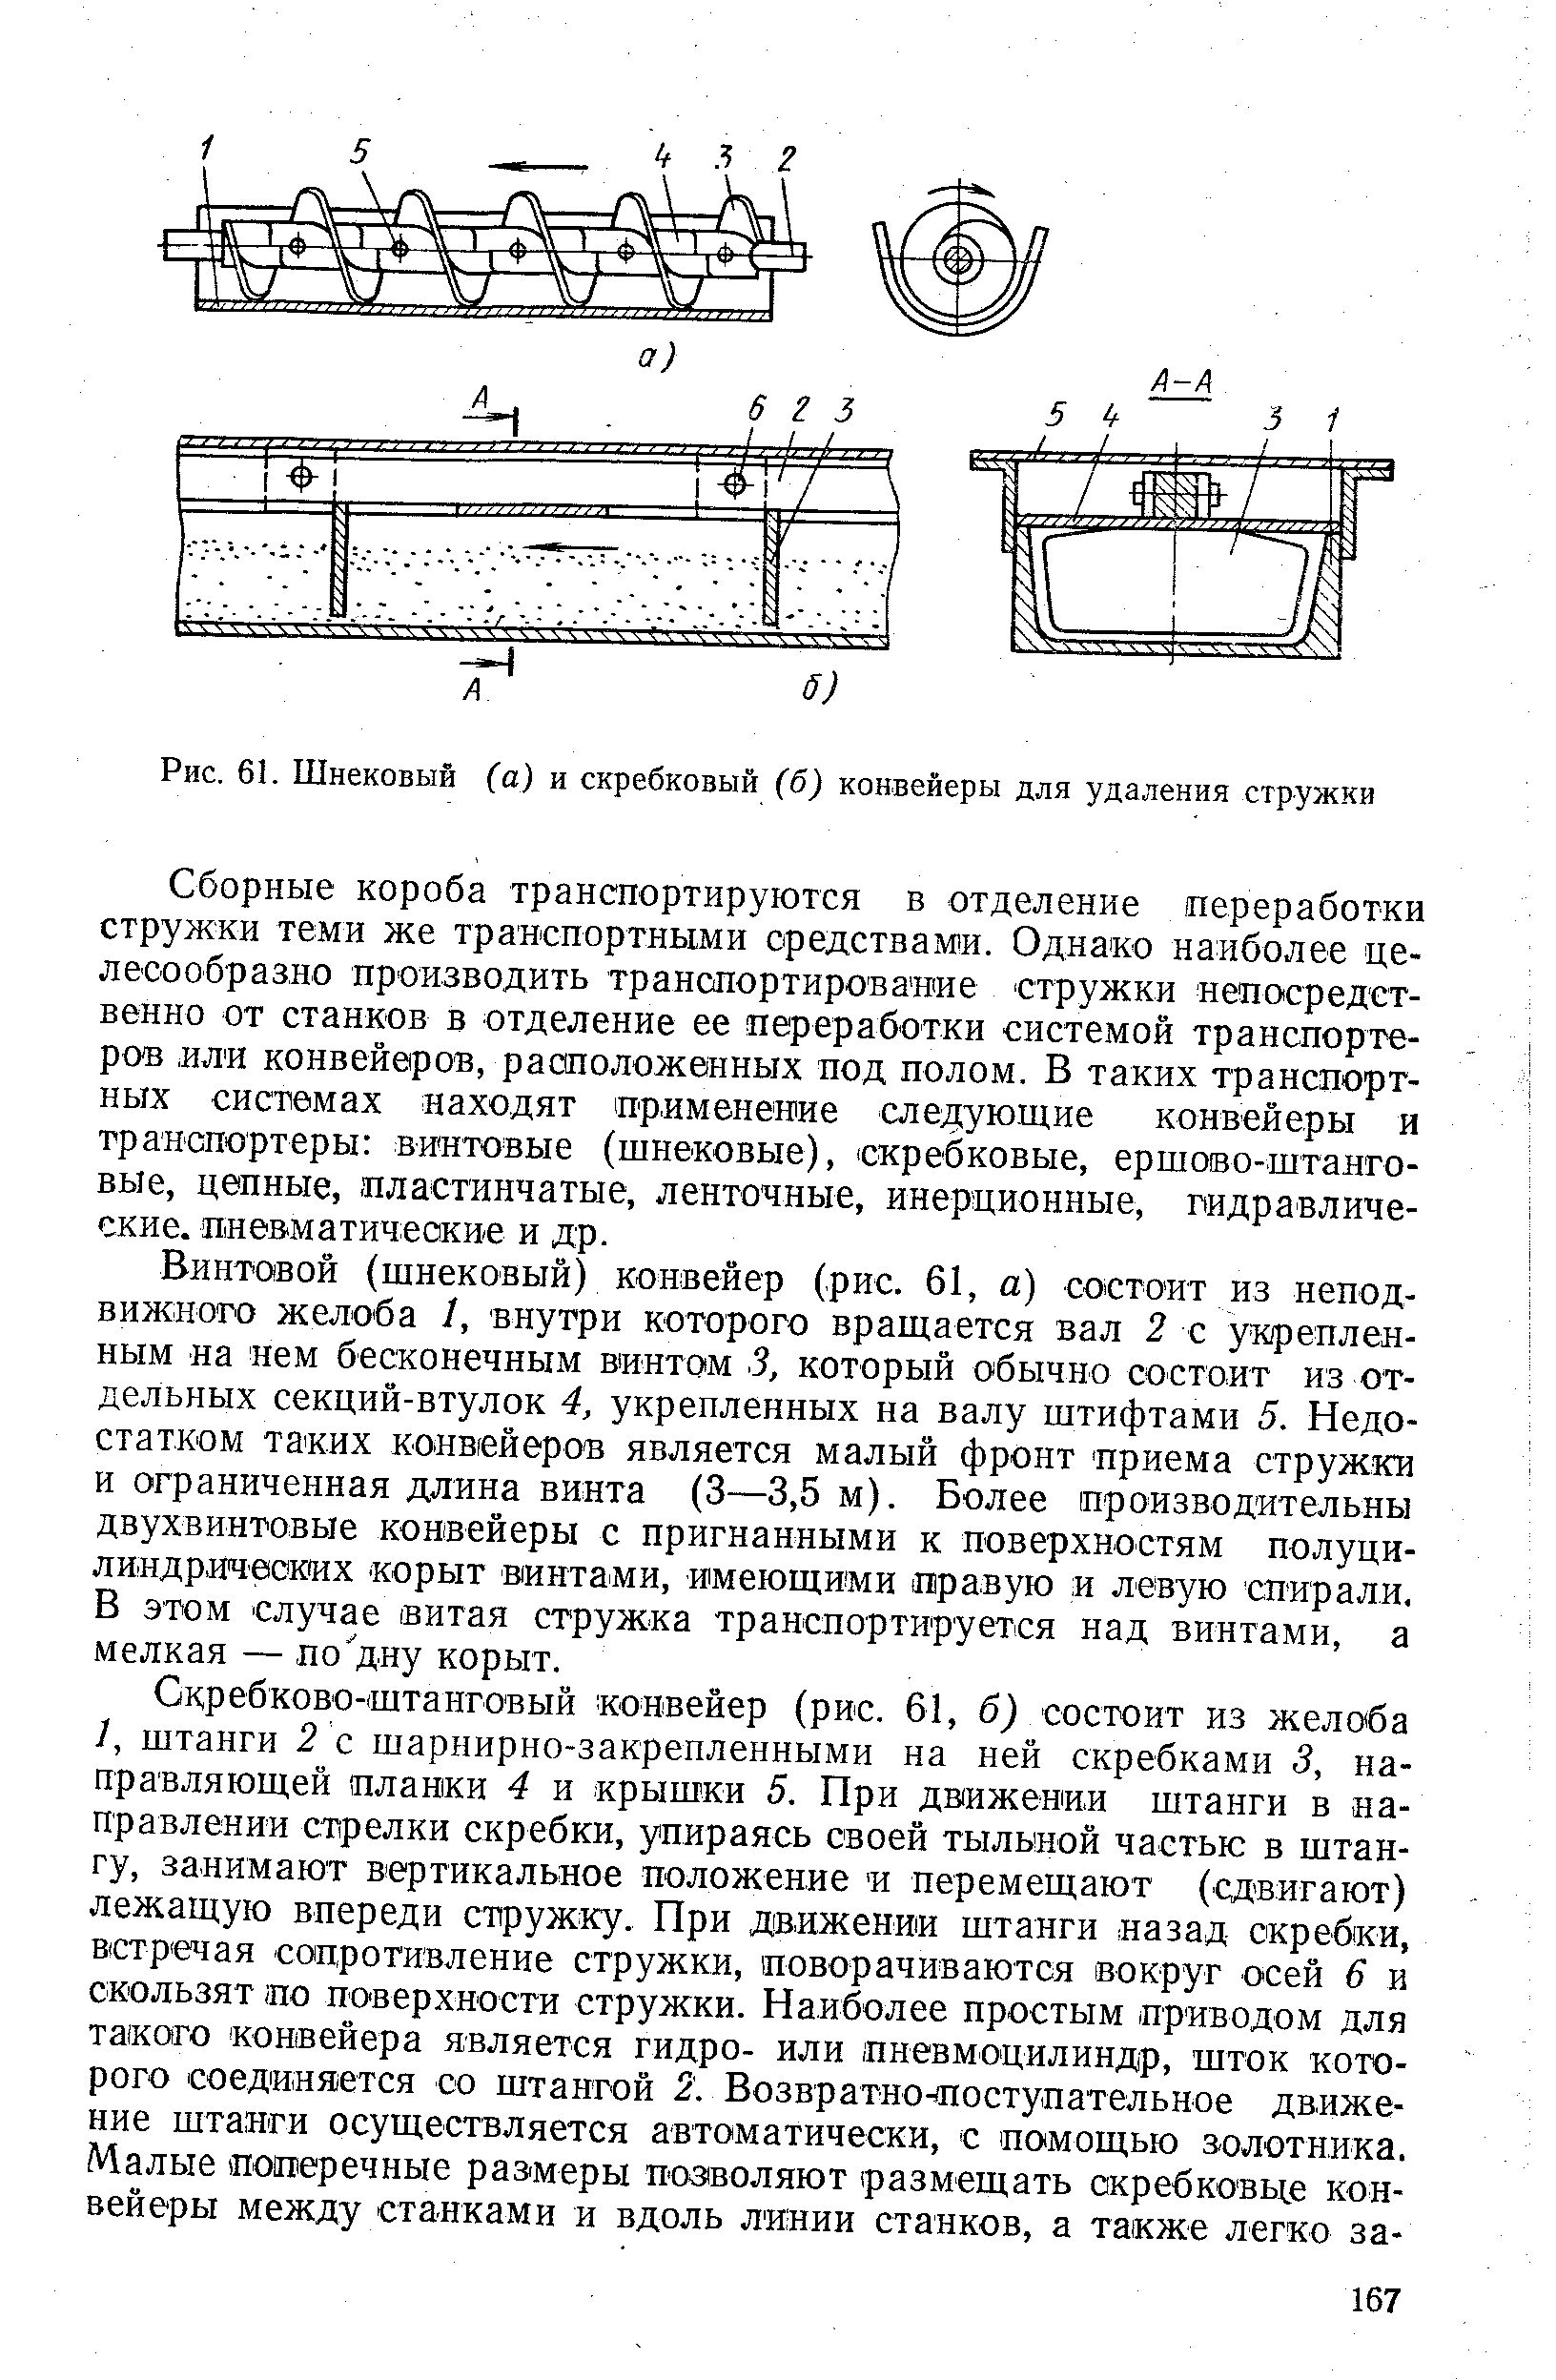 Рис. 61. Шнековый ба) и скребковый (б) конвейеры для удаления стружки
